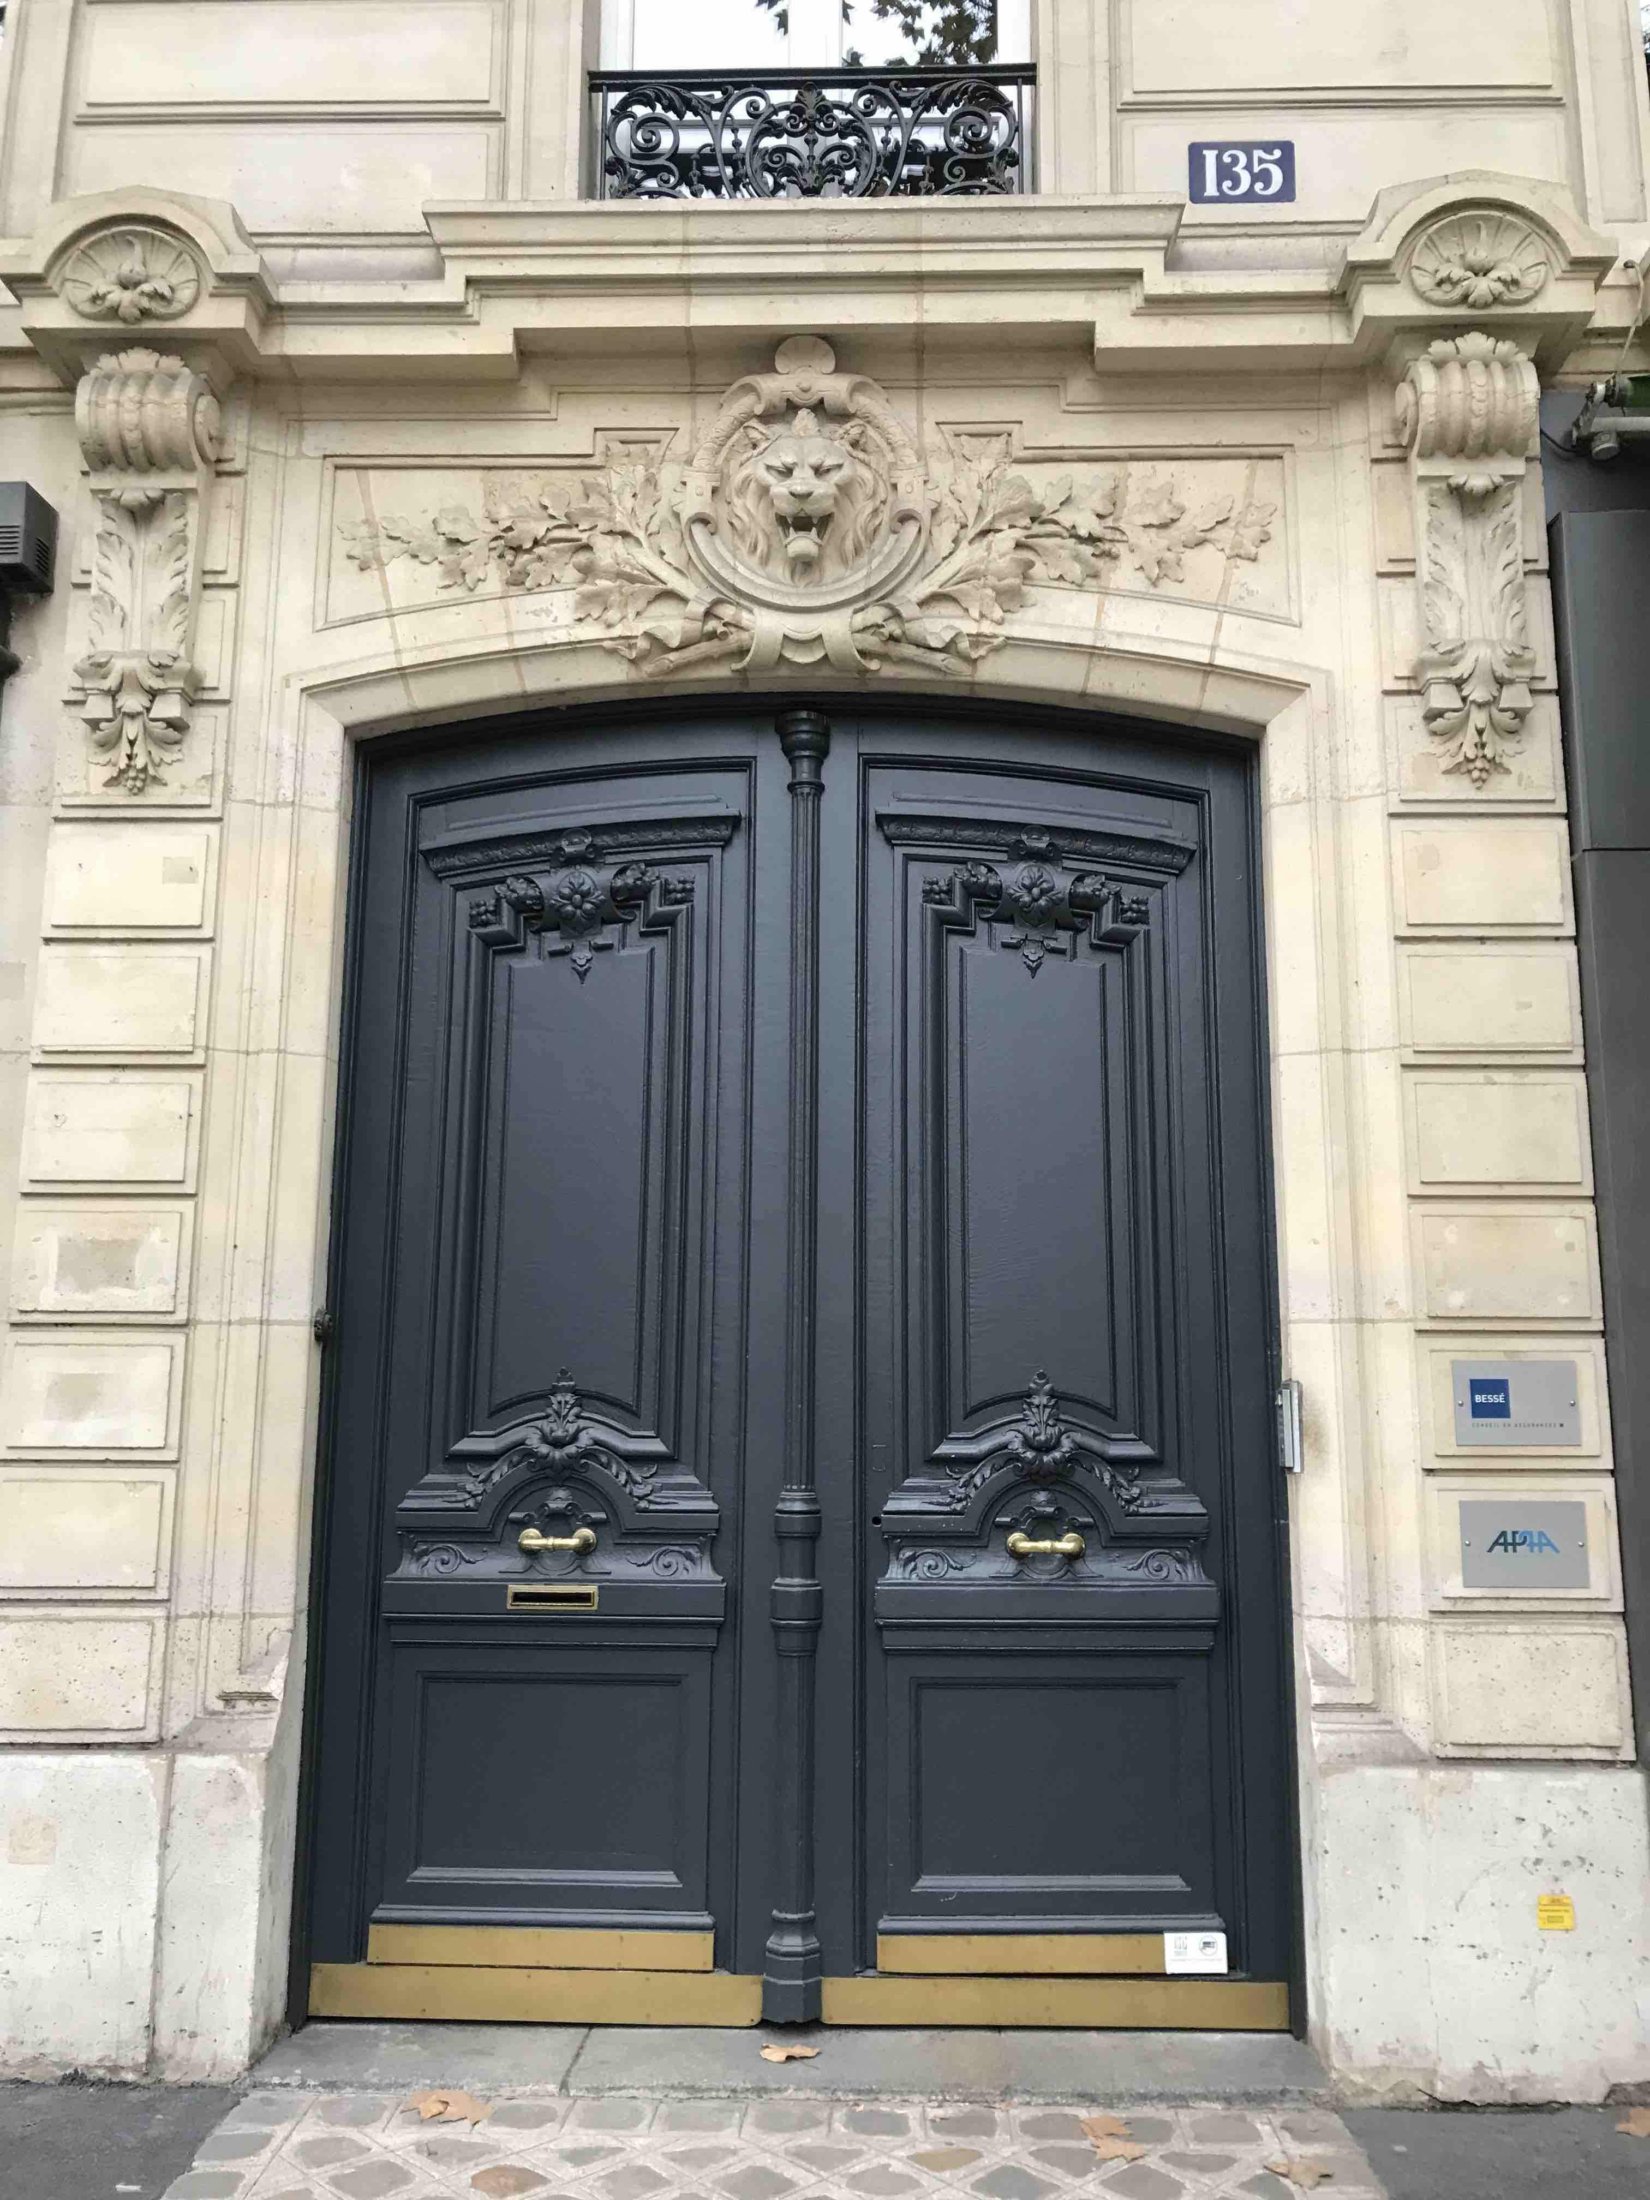 Porte Cochère Style Louis XVI - 135 BD HAUSSMANN PARIS 8